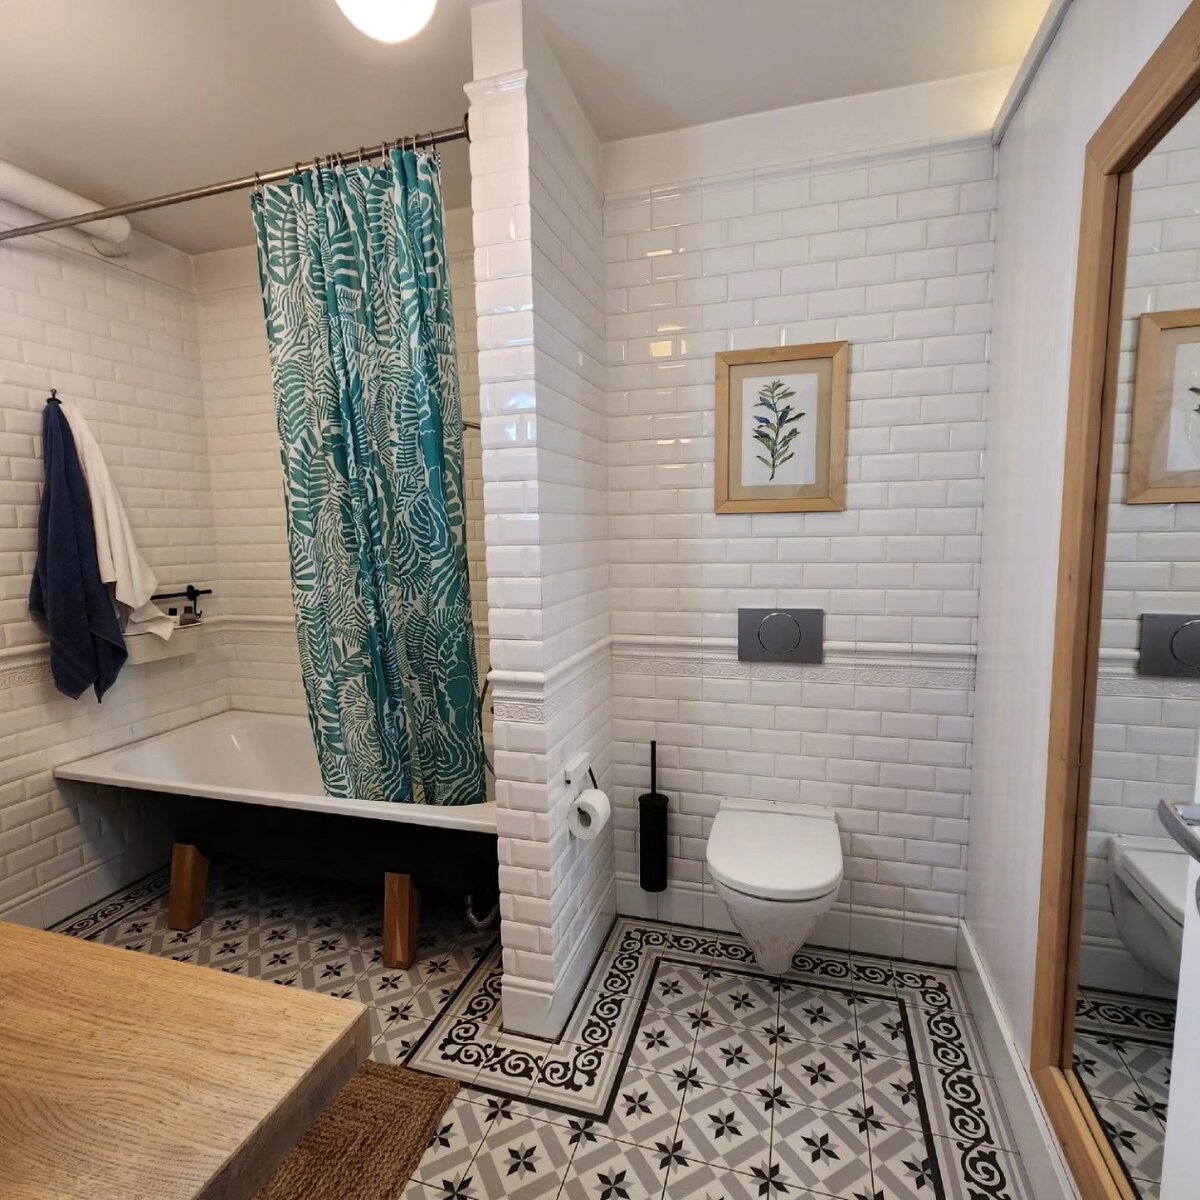 Площадь ванной комнаты — 6 квадратов. Невиданная роскошь для тех, кто живет в домах советской эпохи и привык к более скромным планировкам 